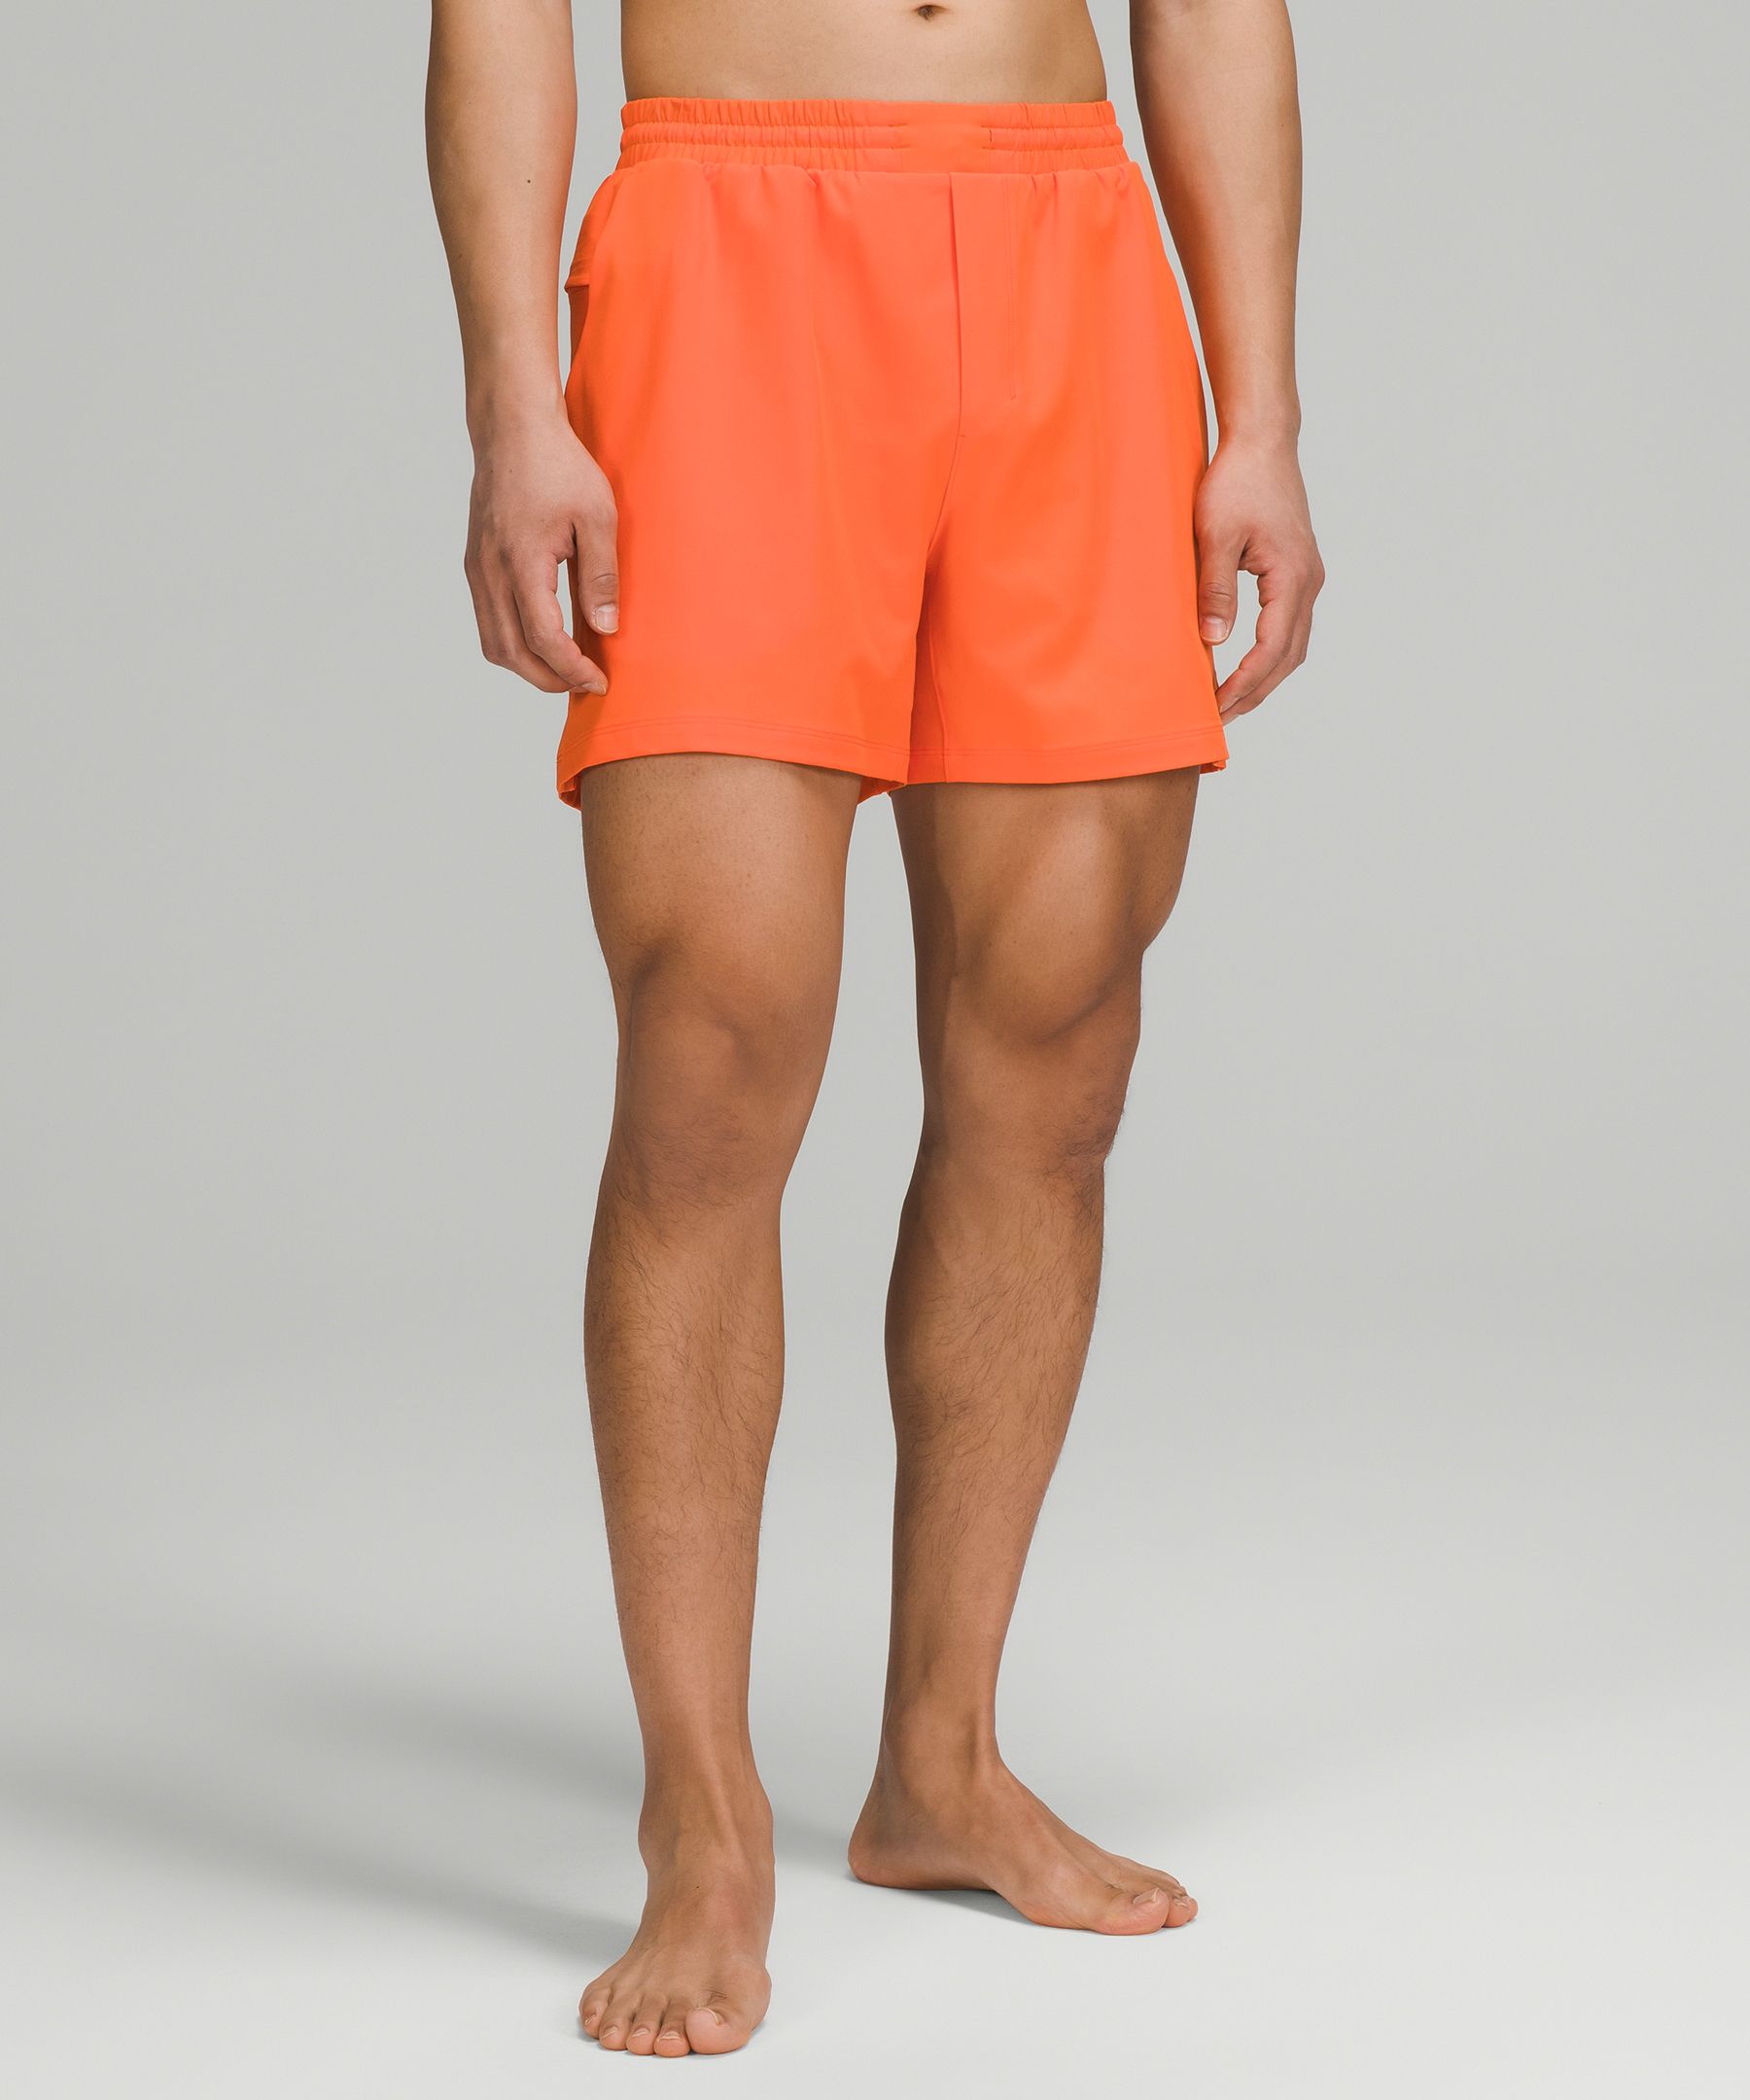 Lululemon Pool Shorts 5" In Orange